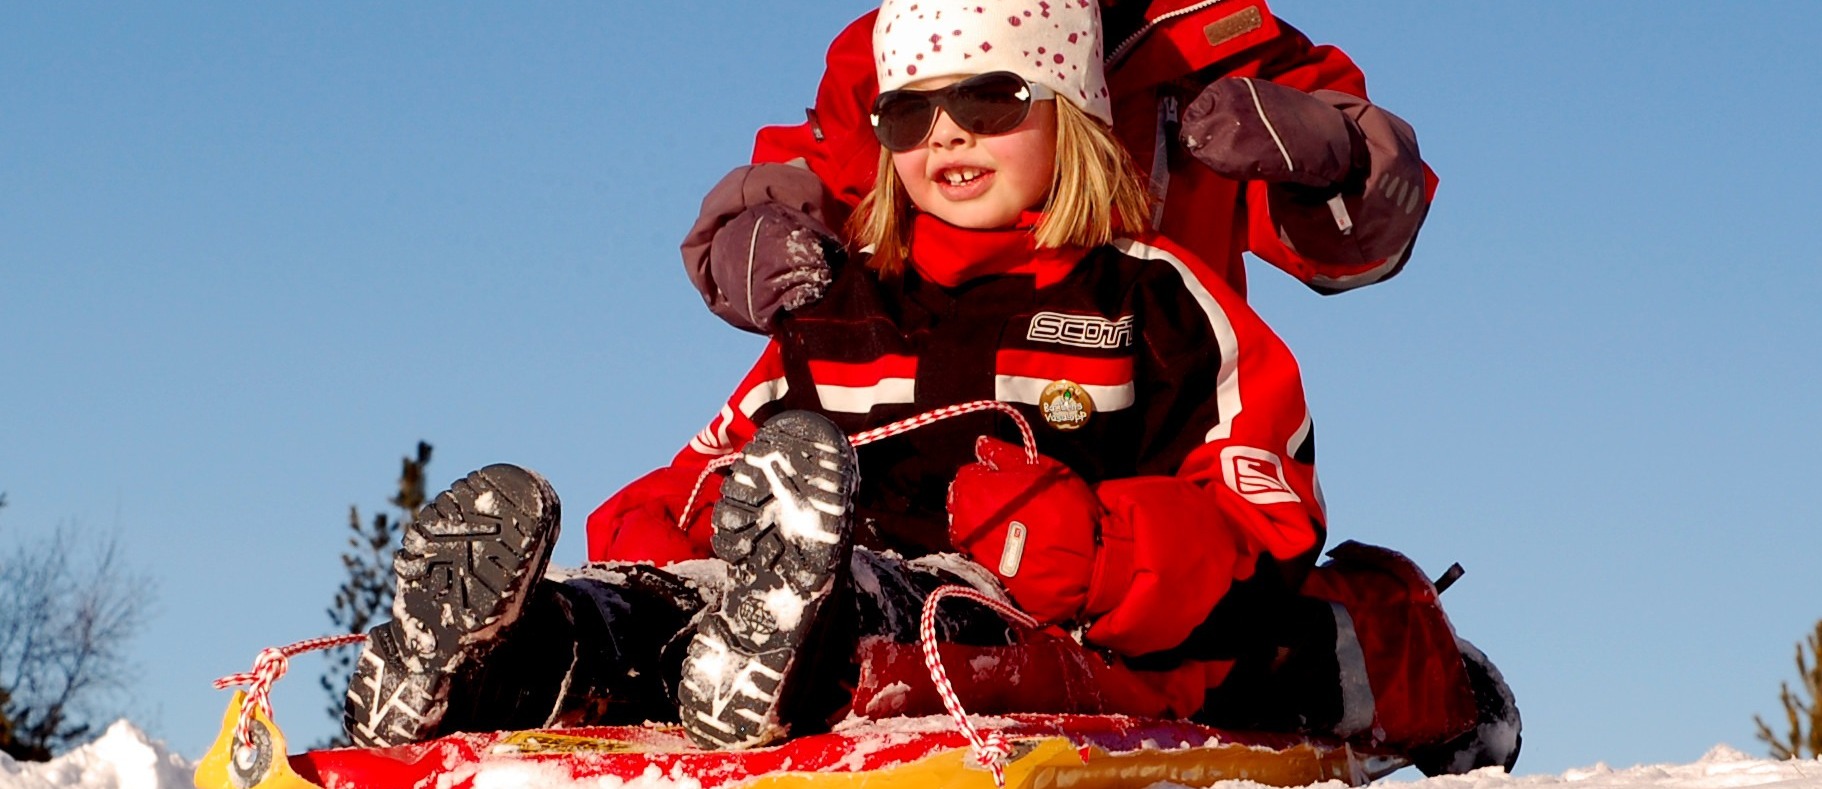 Buty Dla Dziecka Na Zime Jak Wybrac Odpowiednie Co Jest Wazne Dla Zdrowej Stopy